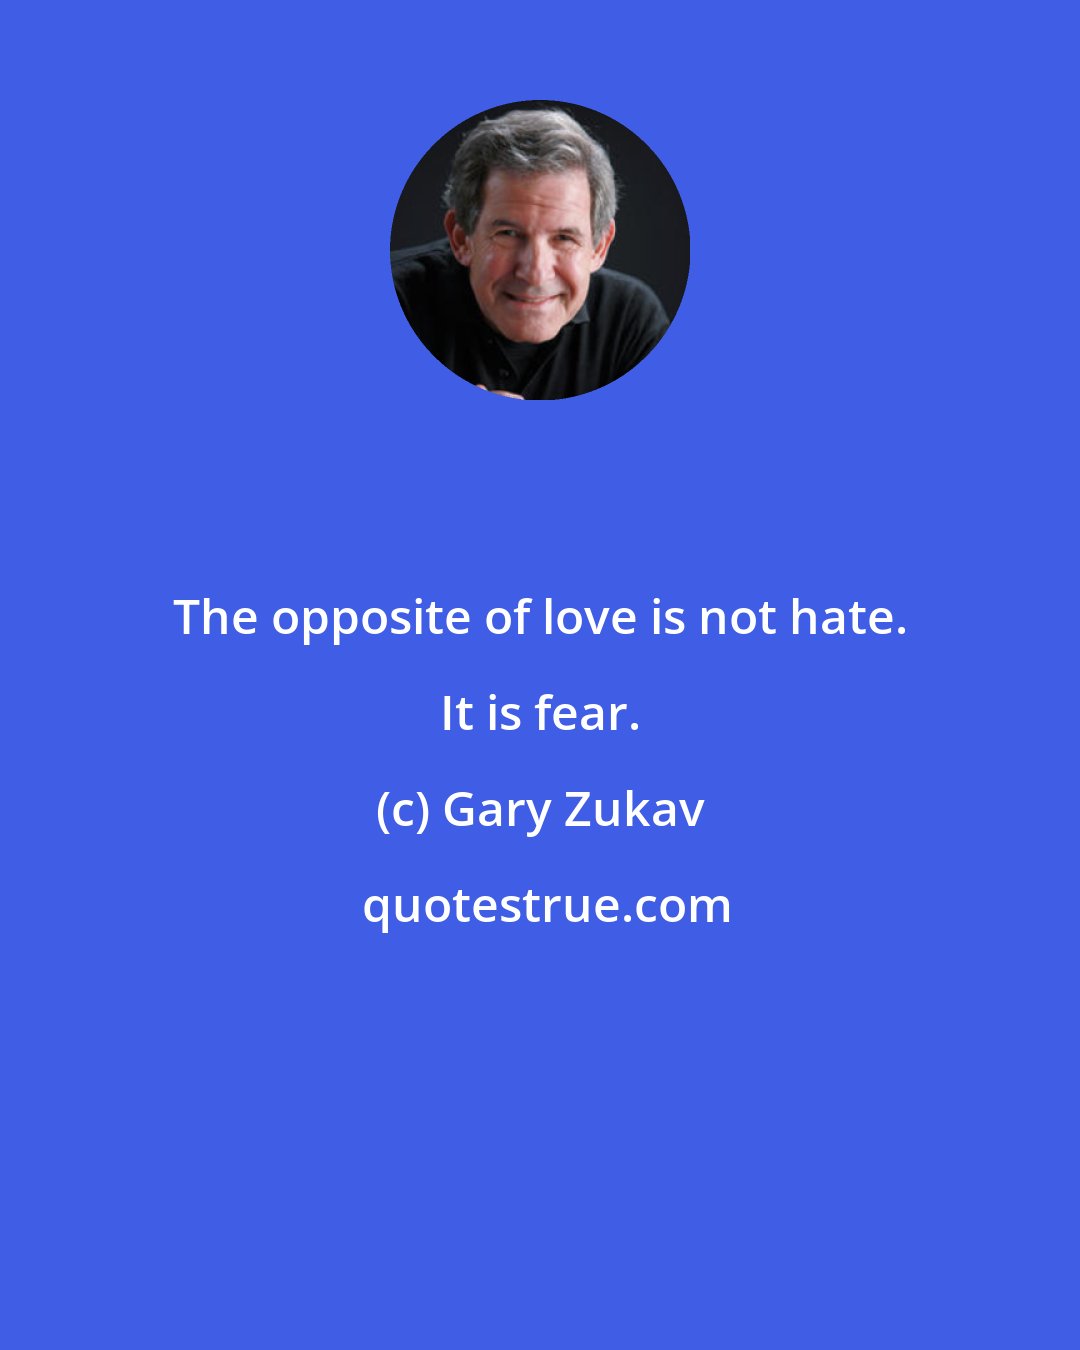 Gary Zukav: The opposite of love is not hate. It is fear.